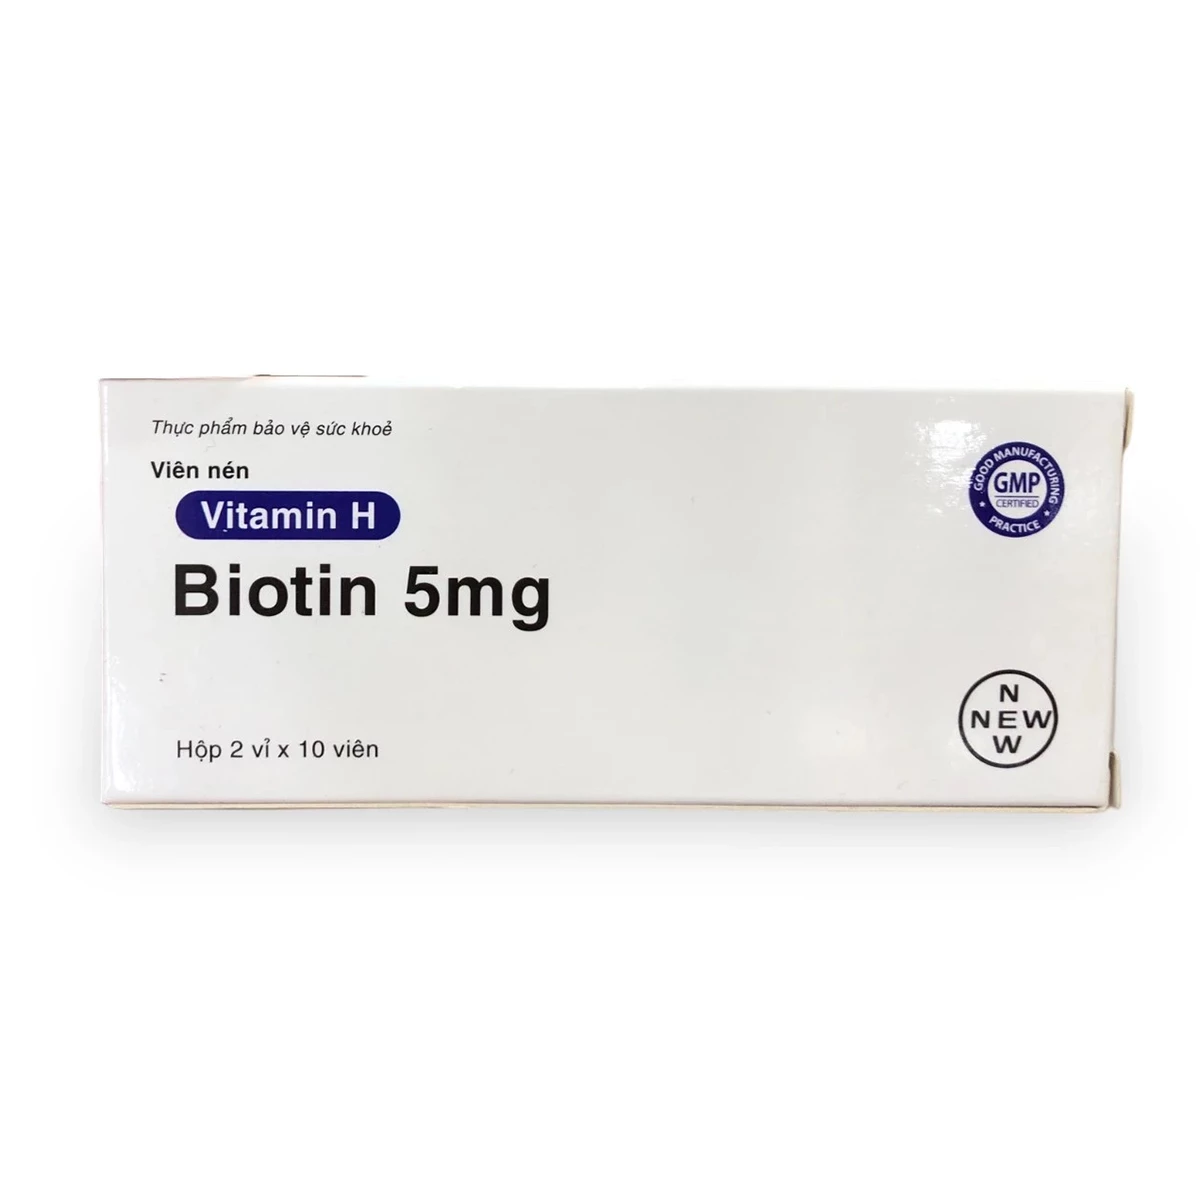 Vitamin H Biotin 5mg New - Hỗ trợ giảm rụng tóc, giảm tiết bã nhờn